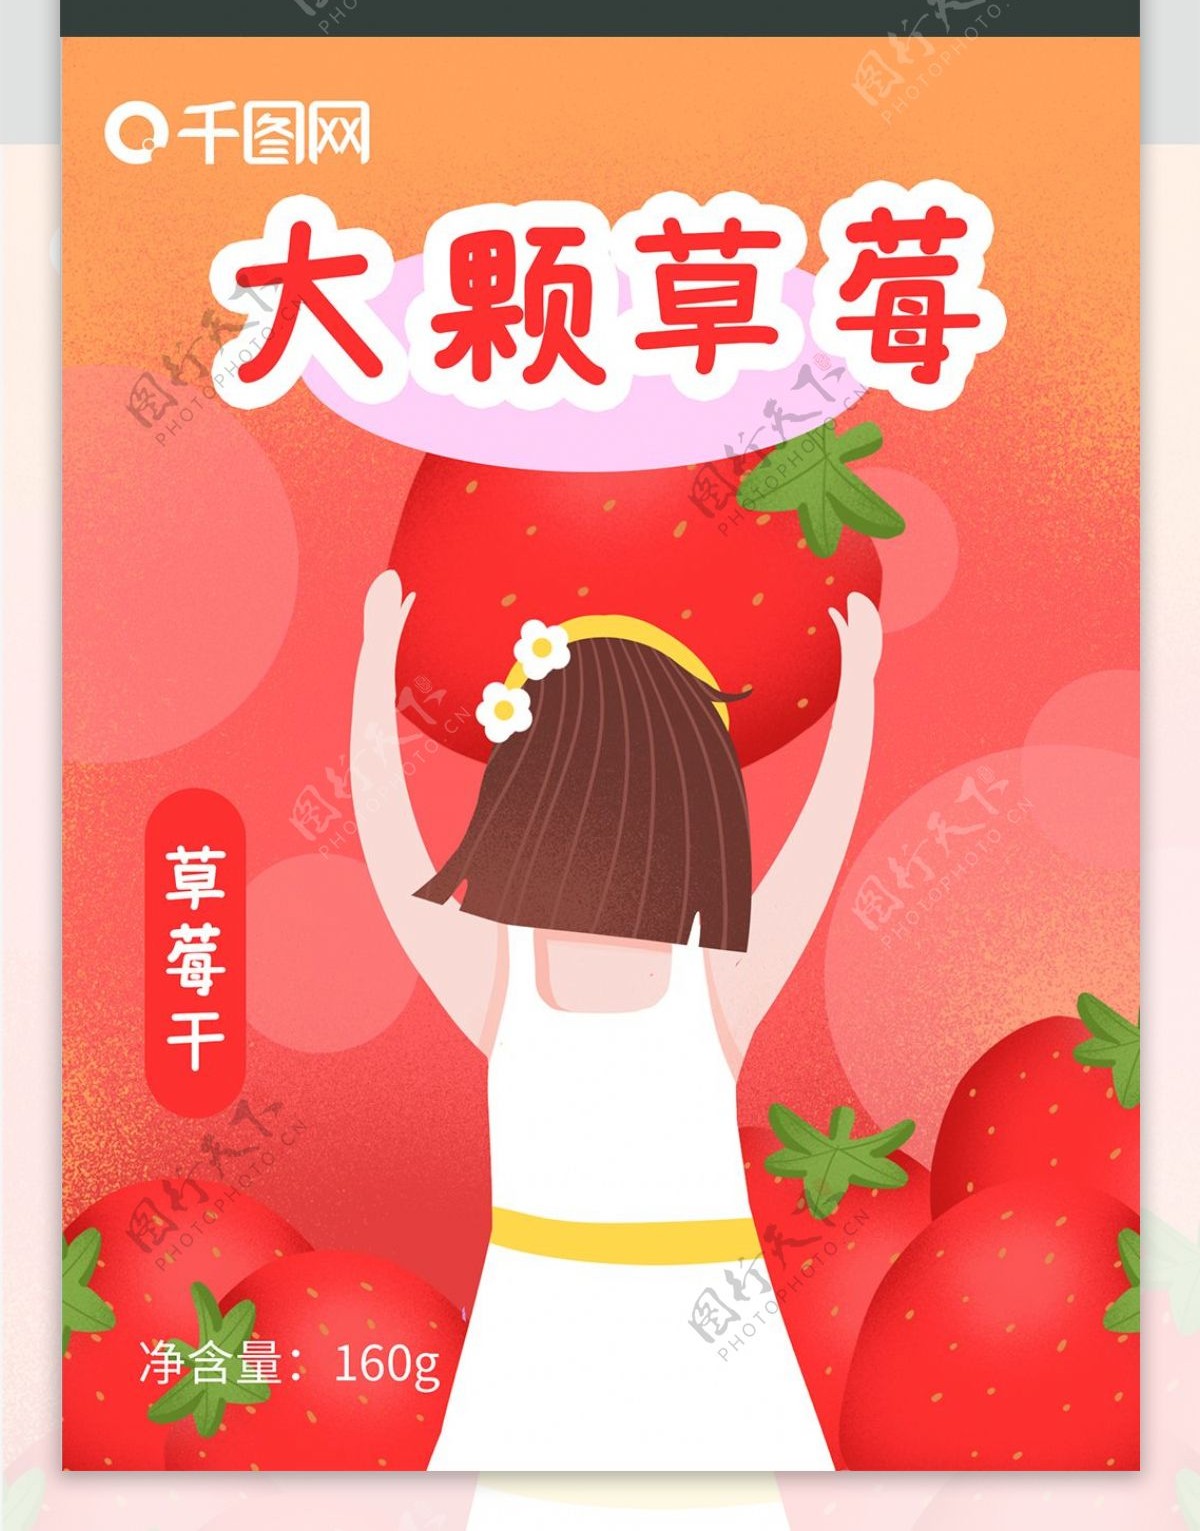 大颗草莓食品包装插画